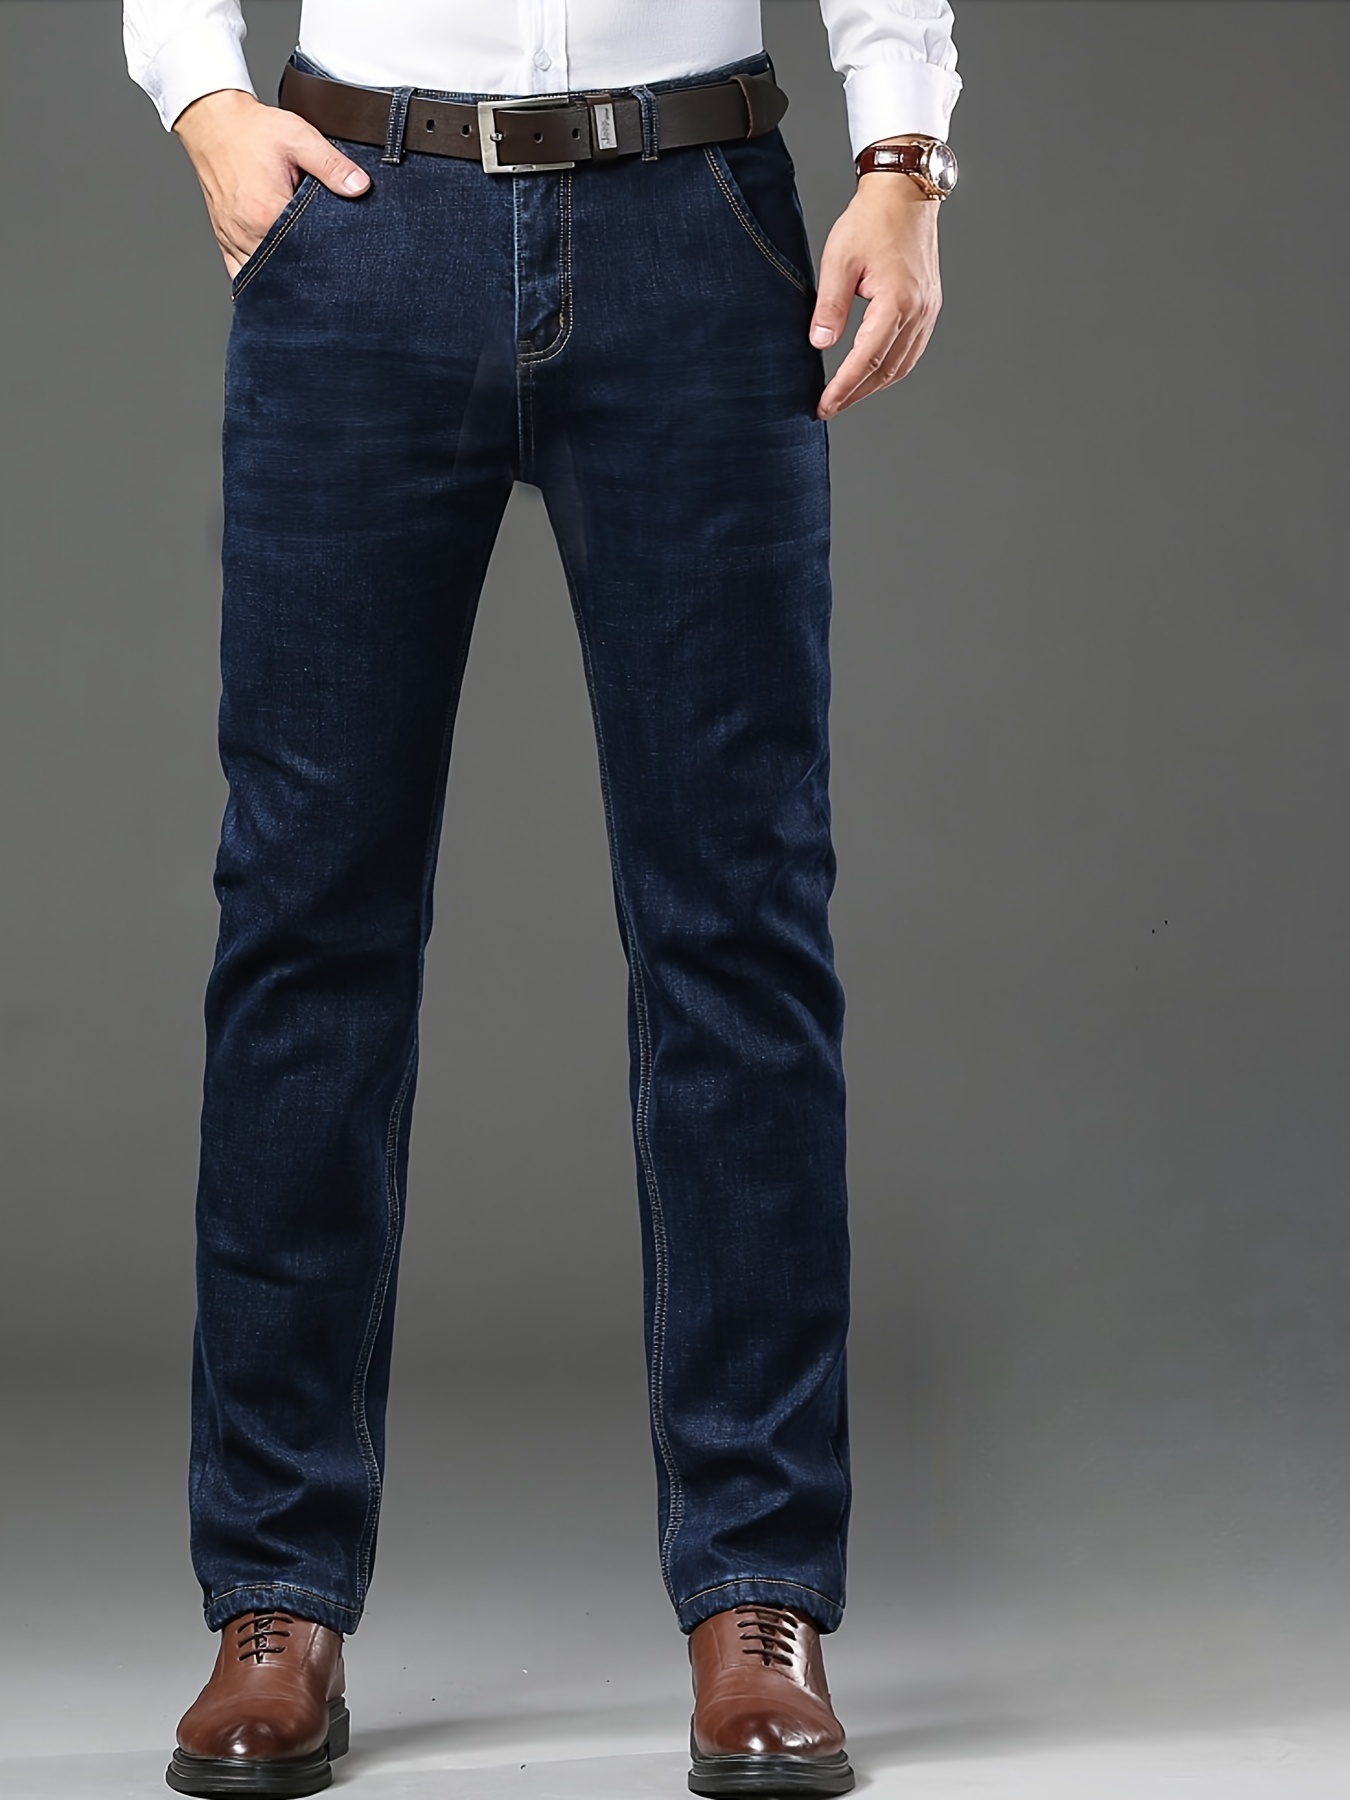 Jeans negros para hombre, pantalones elásticos y ajustados, desgastados,  jeans rasgados para hombre, jeans de trabajo ajustados para hombre